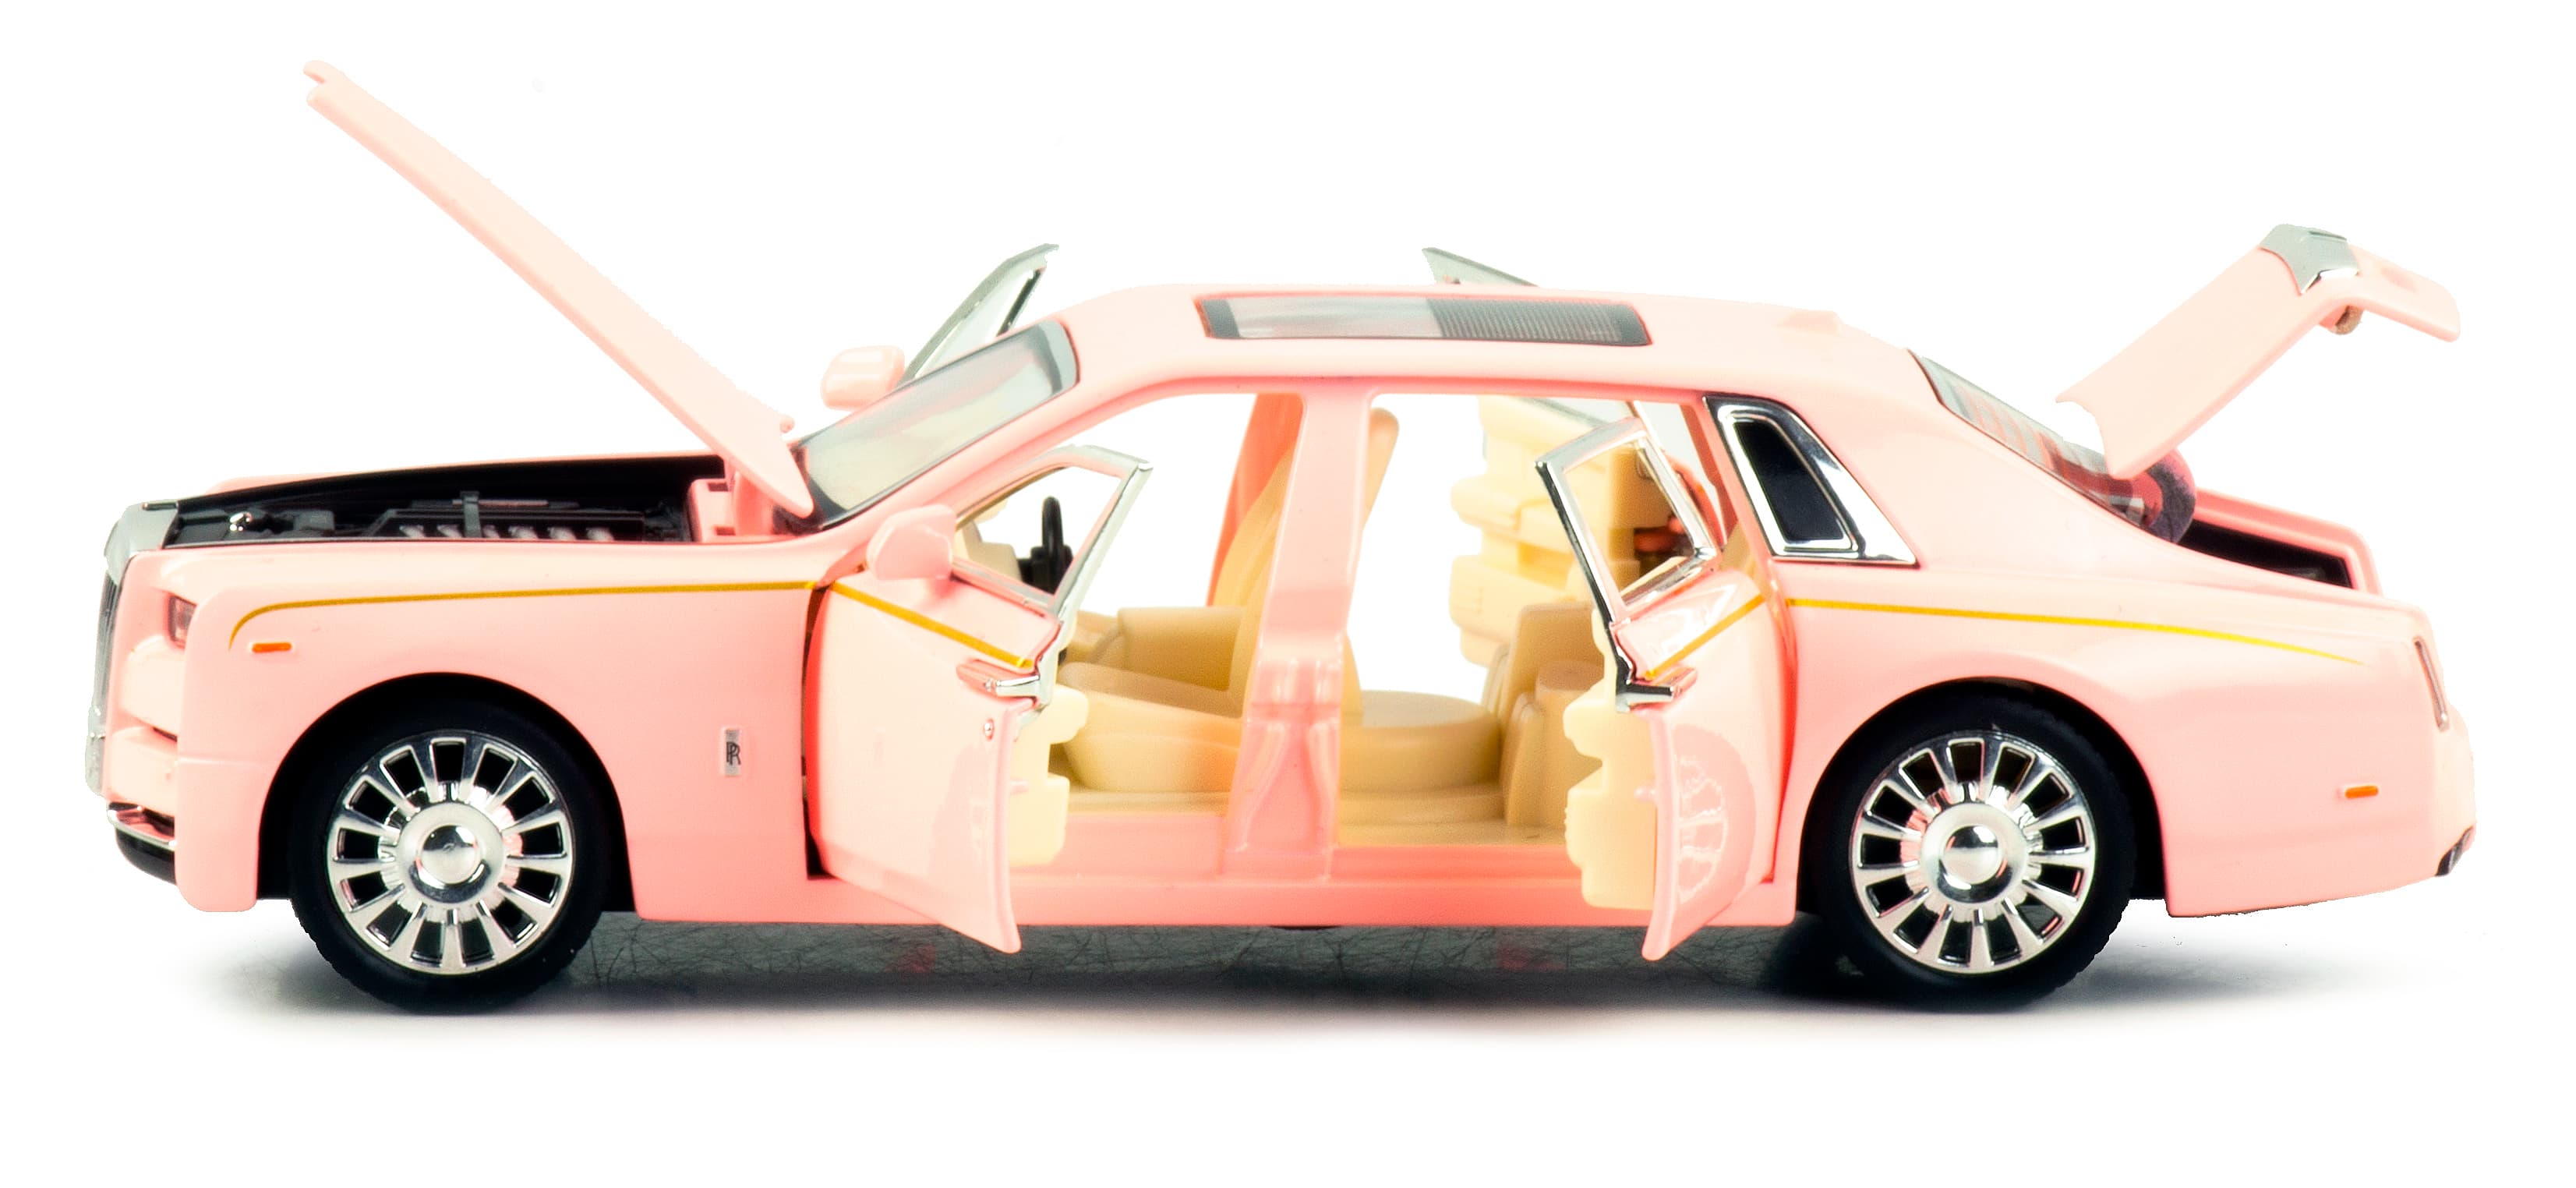 Металлическая машинка Che Zhi 1:32 «Rolls-Royce Phantom» CZ42A, 17 см., инерционная, свет, звук / Розовый